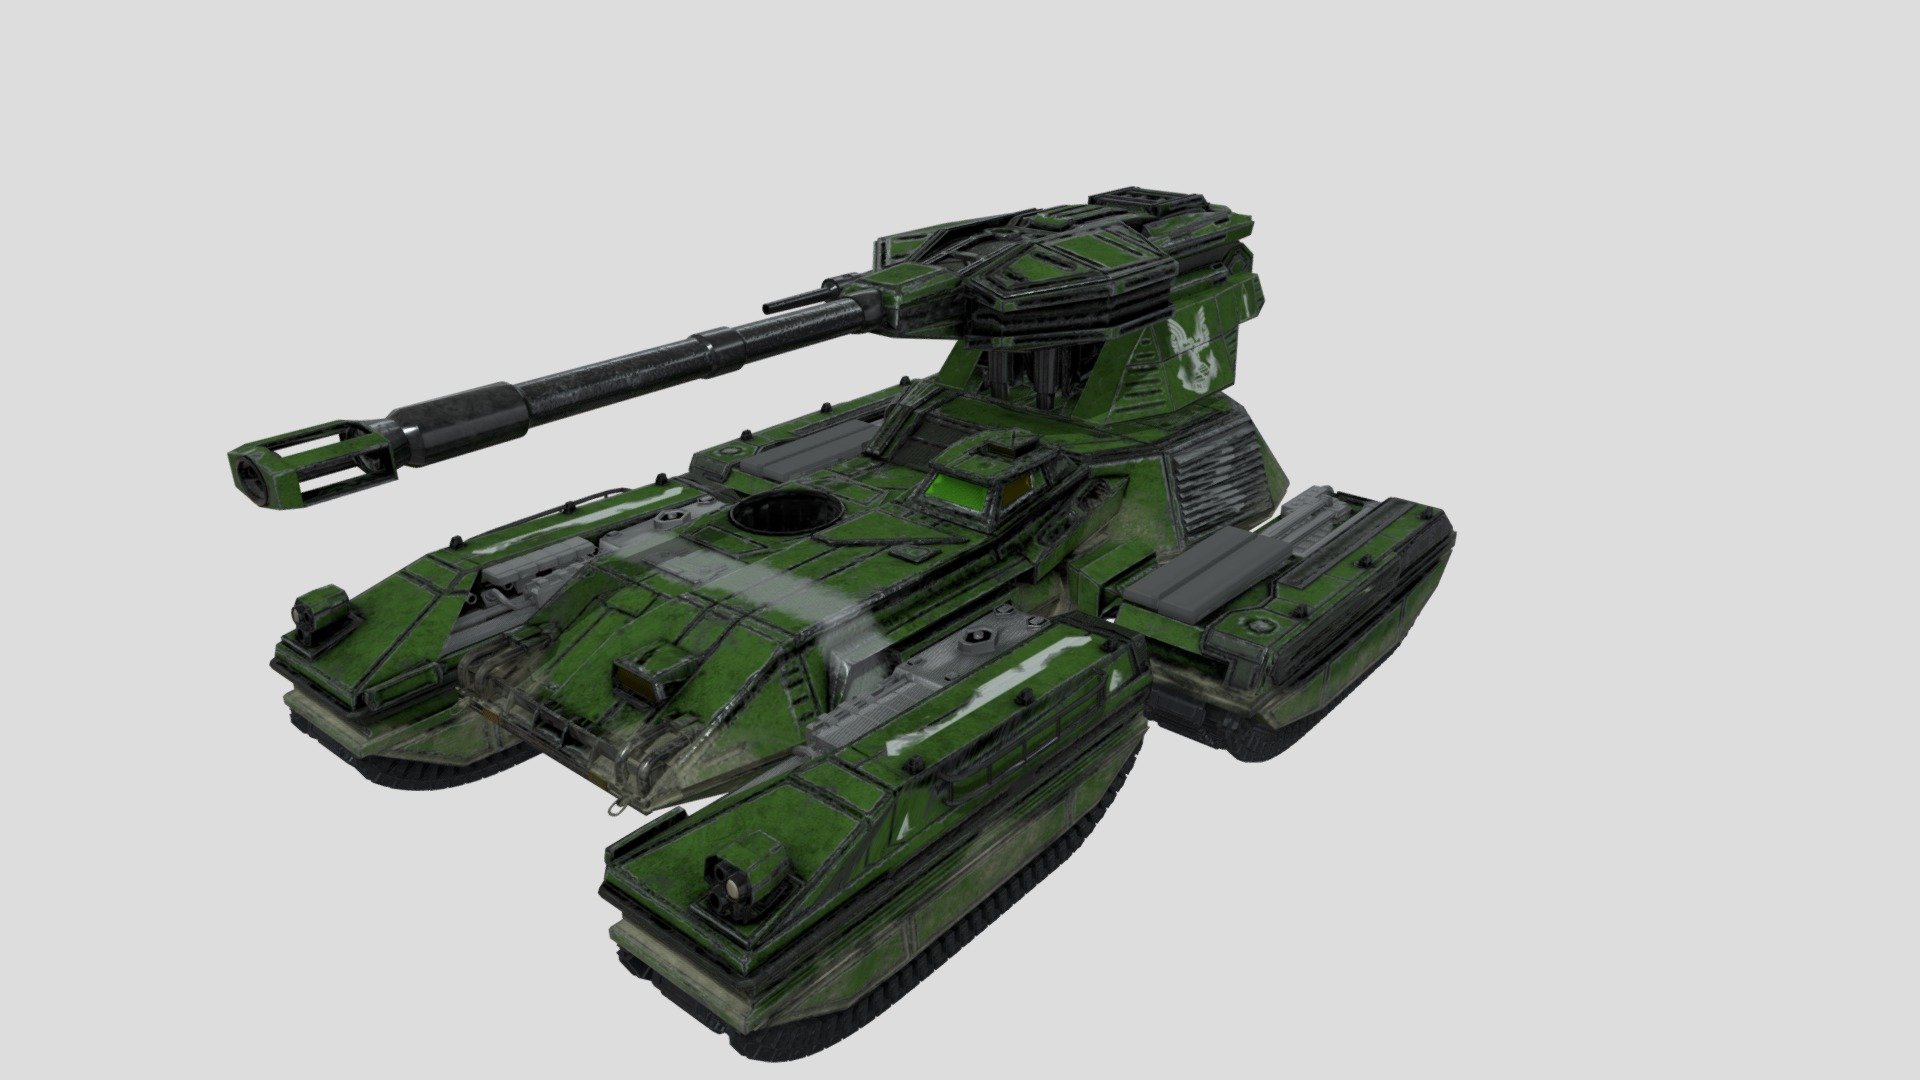 Scorpion tank (UNSC) Variant